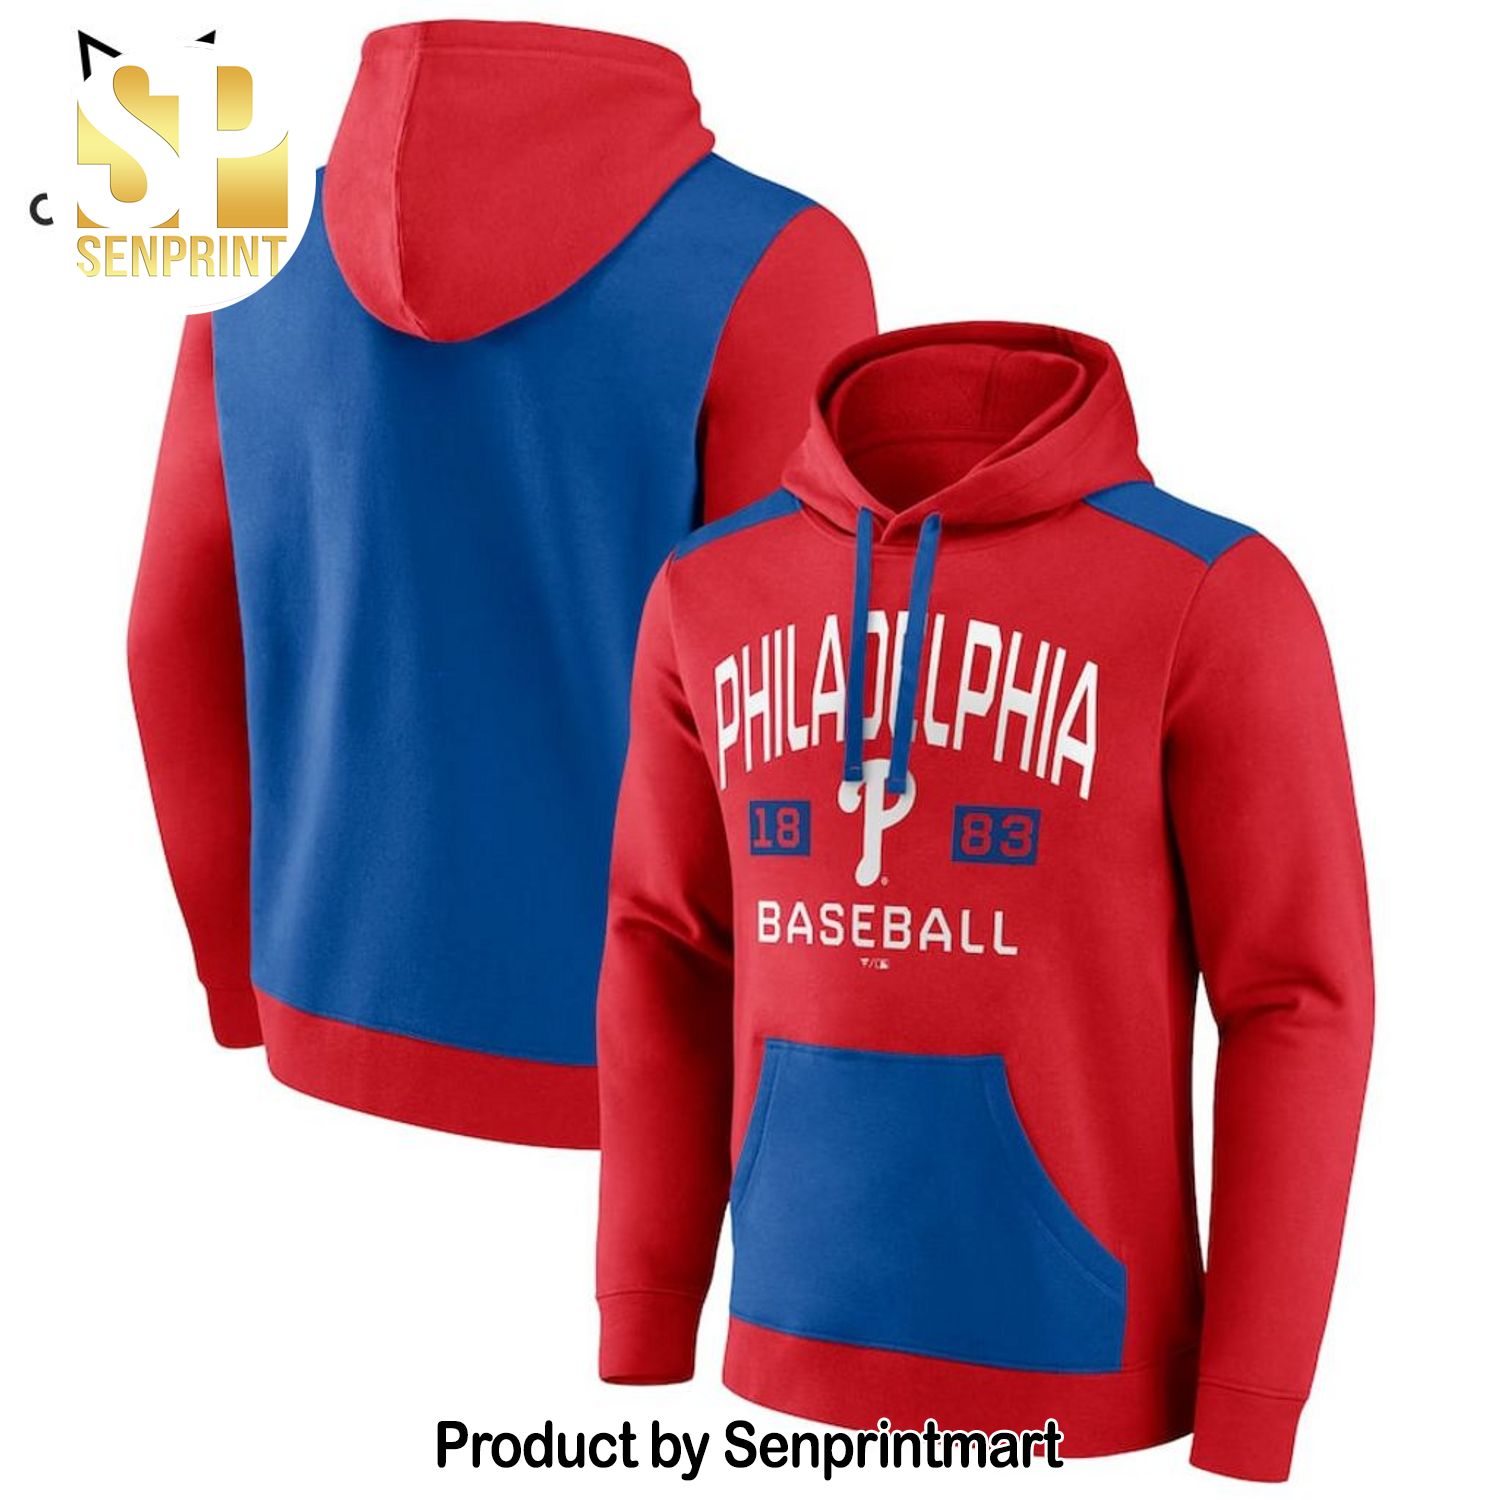 Philadelphia Phillies 1883 Baseball Red Blue All Over Print Shirt